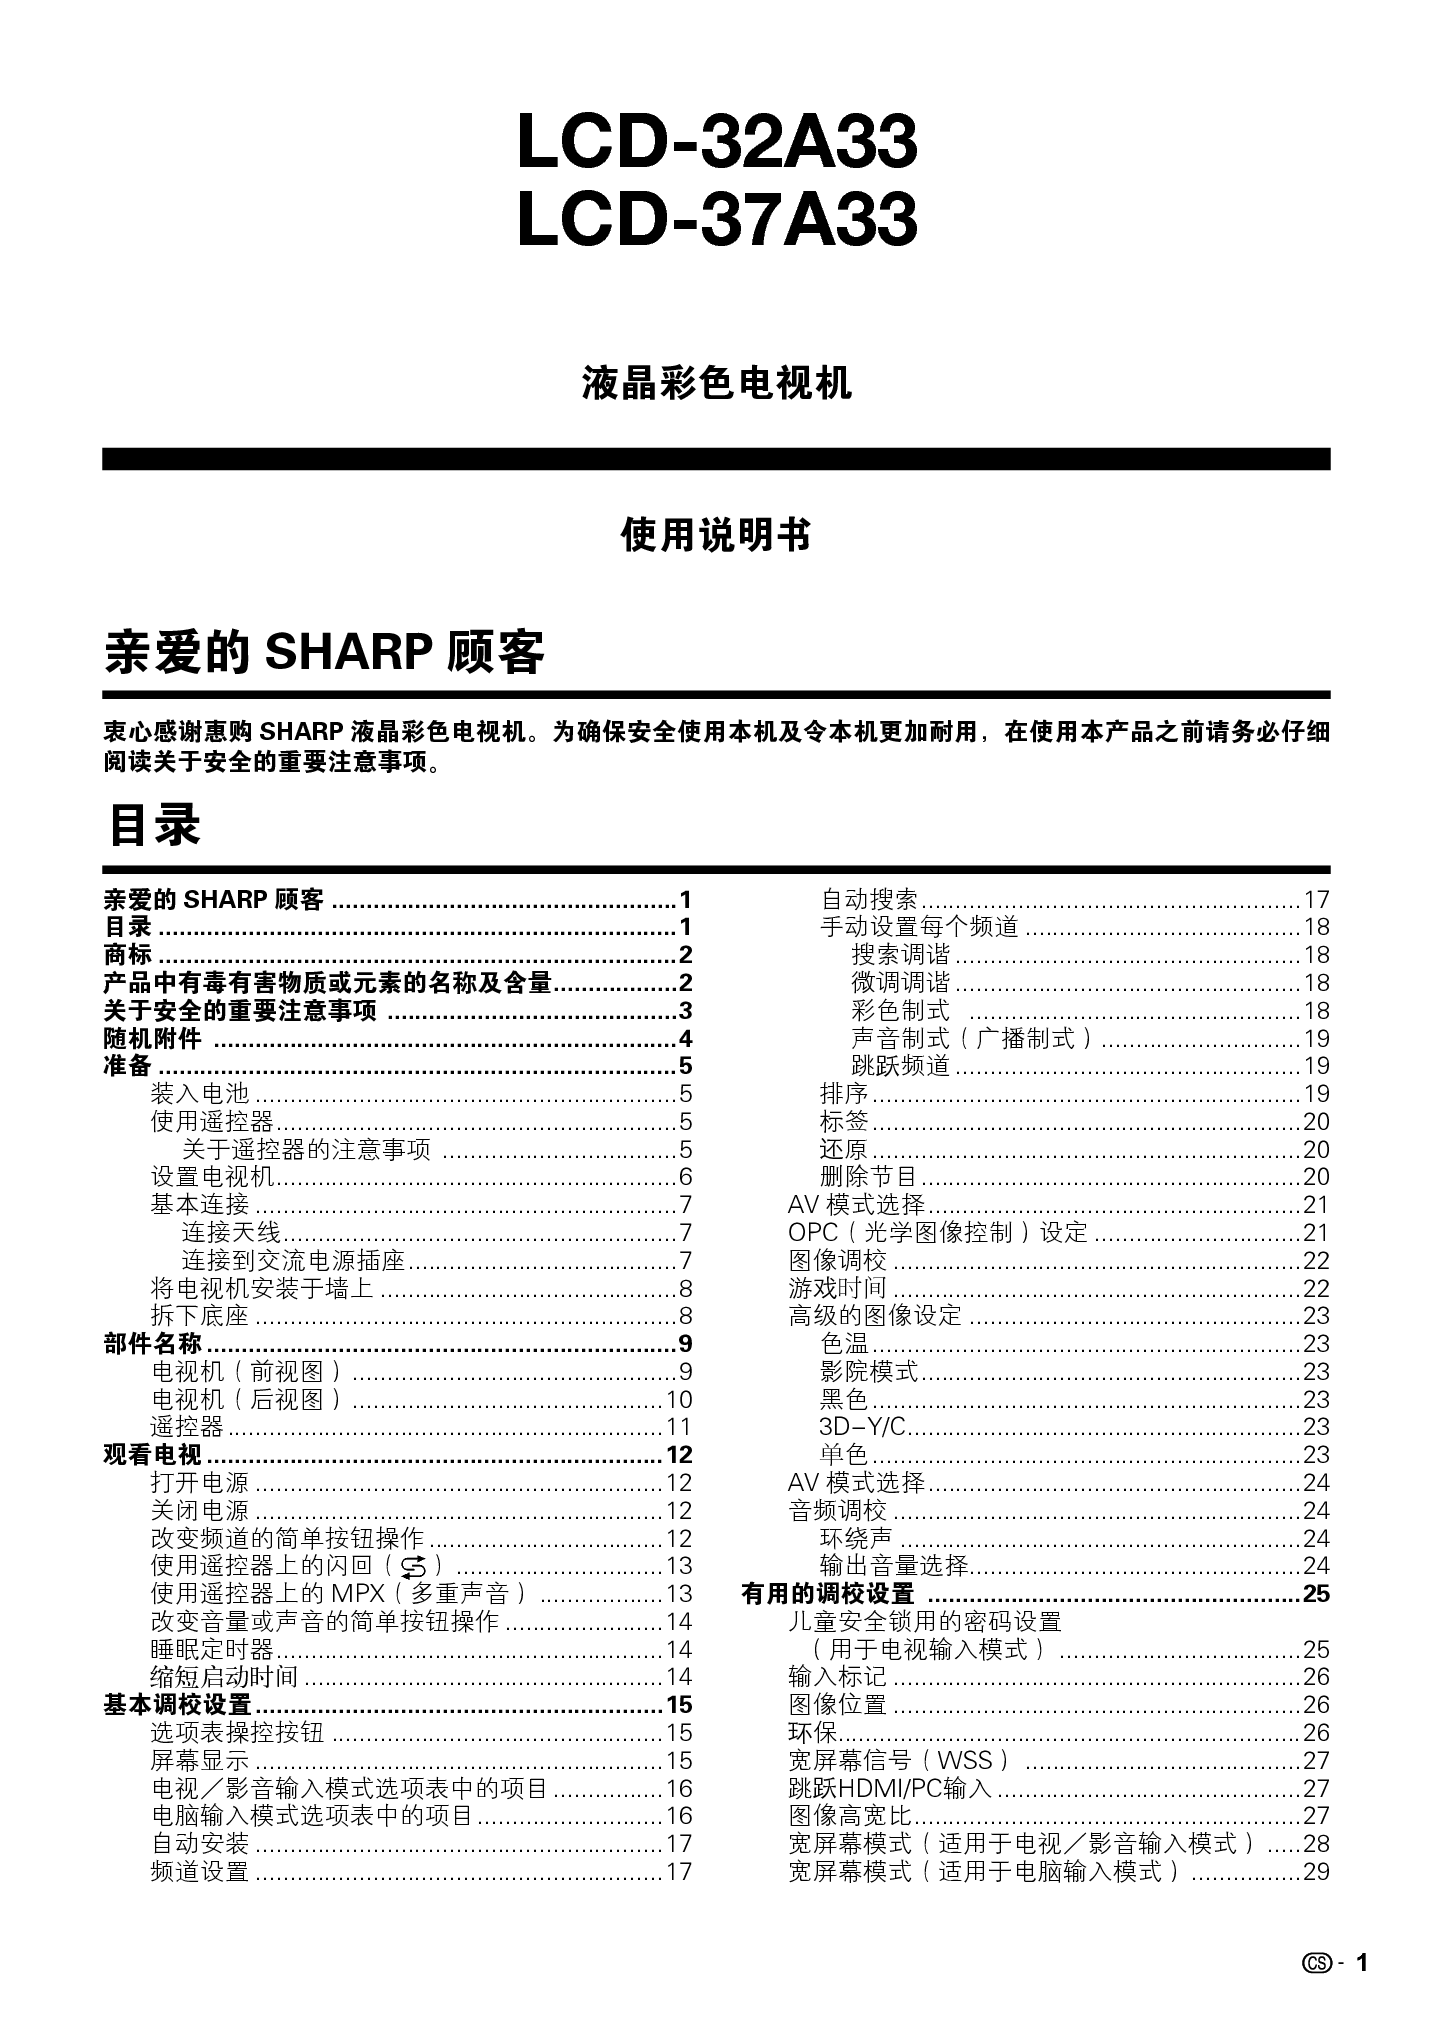 夏普 Sharp LCD-32A33 说明书 第1页